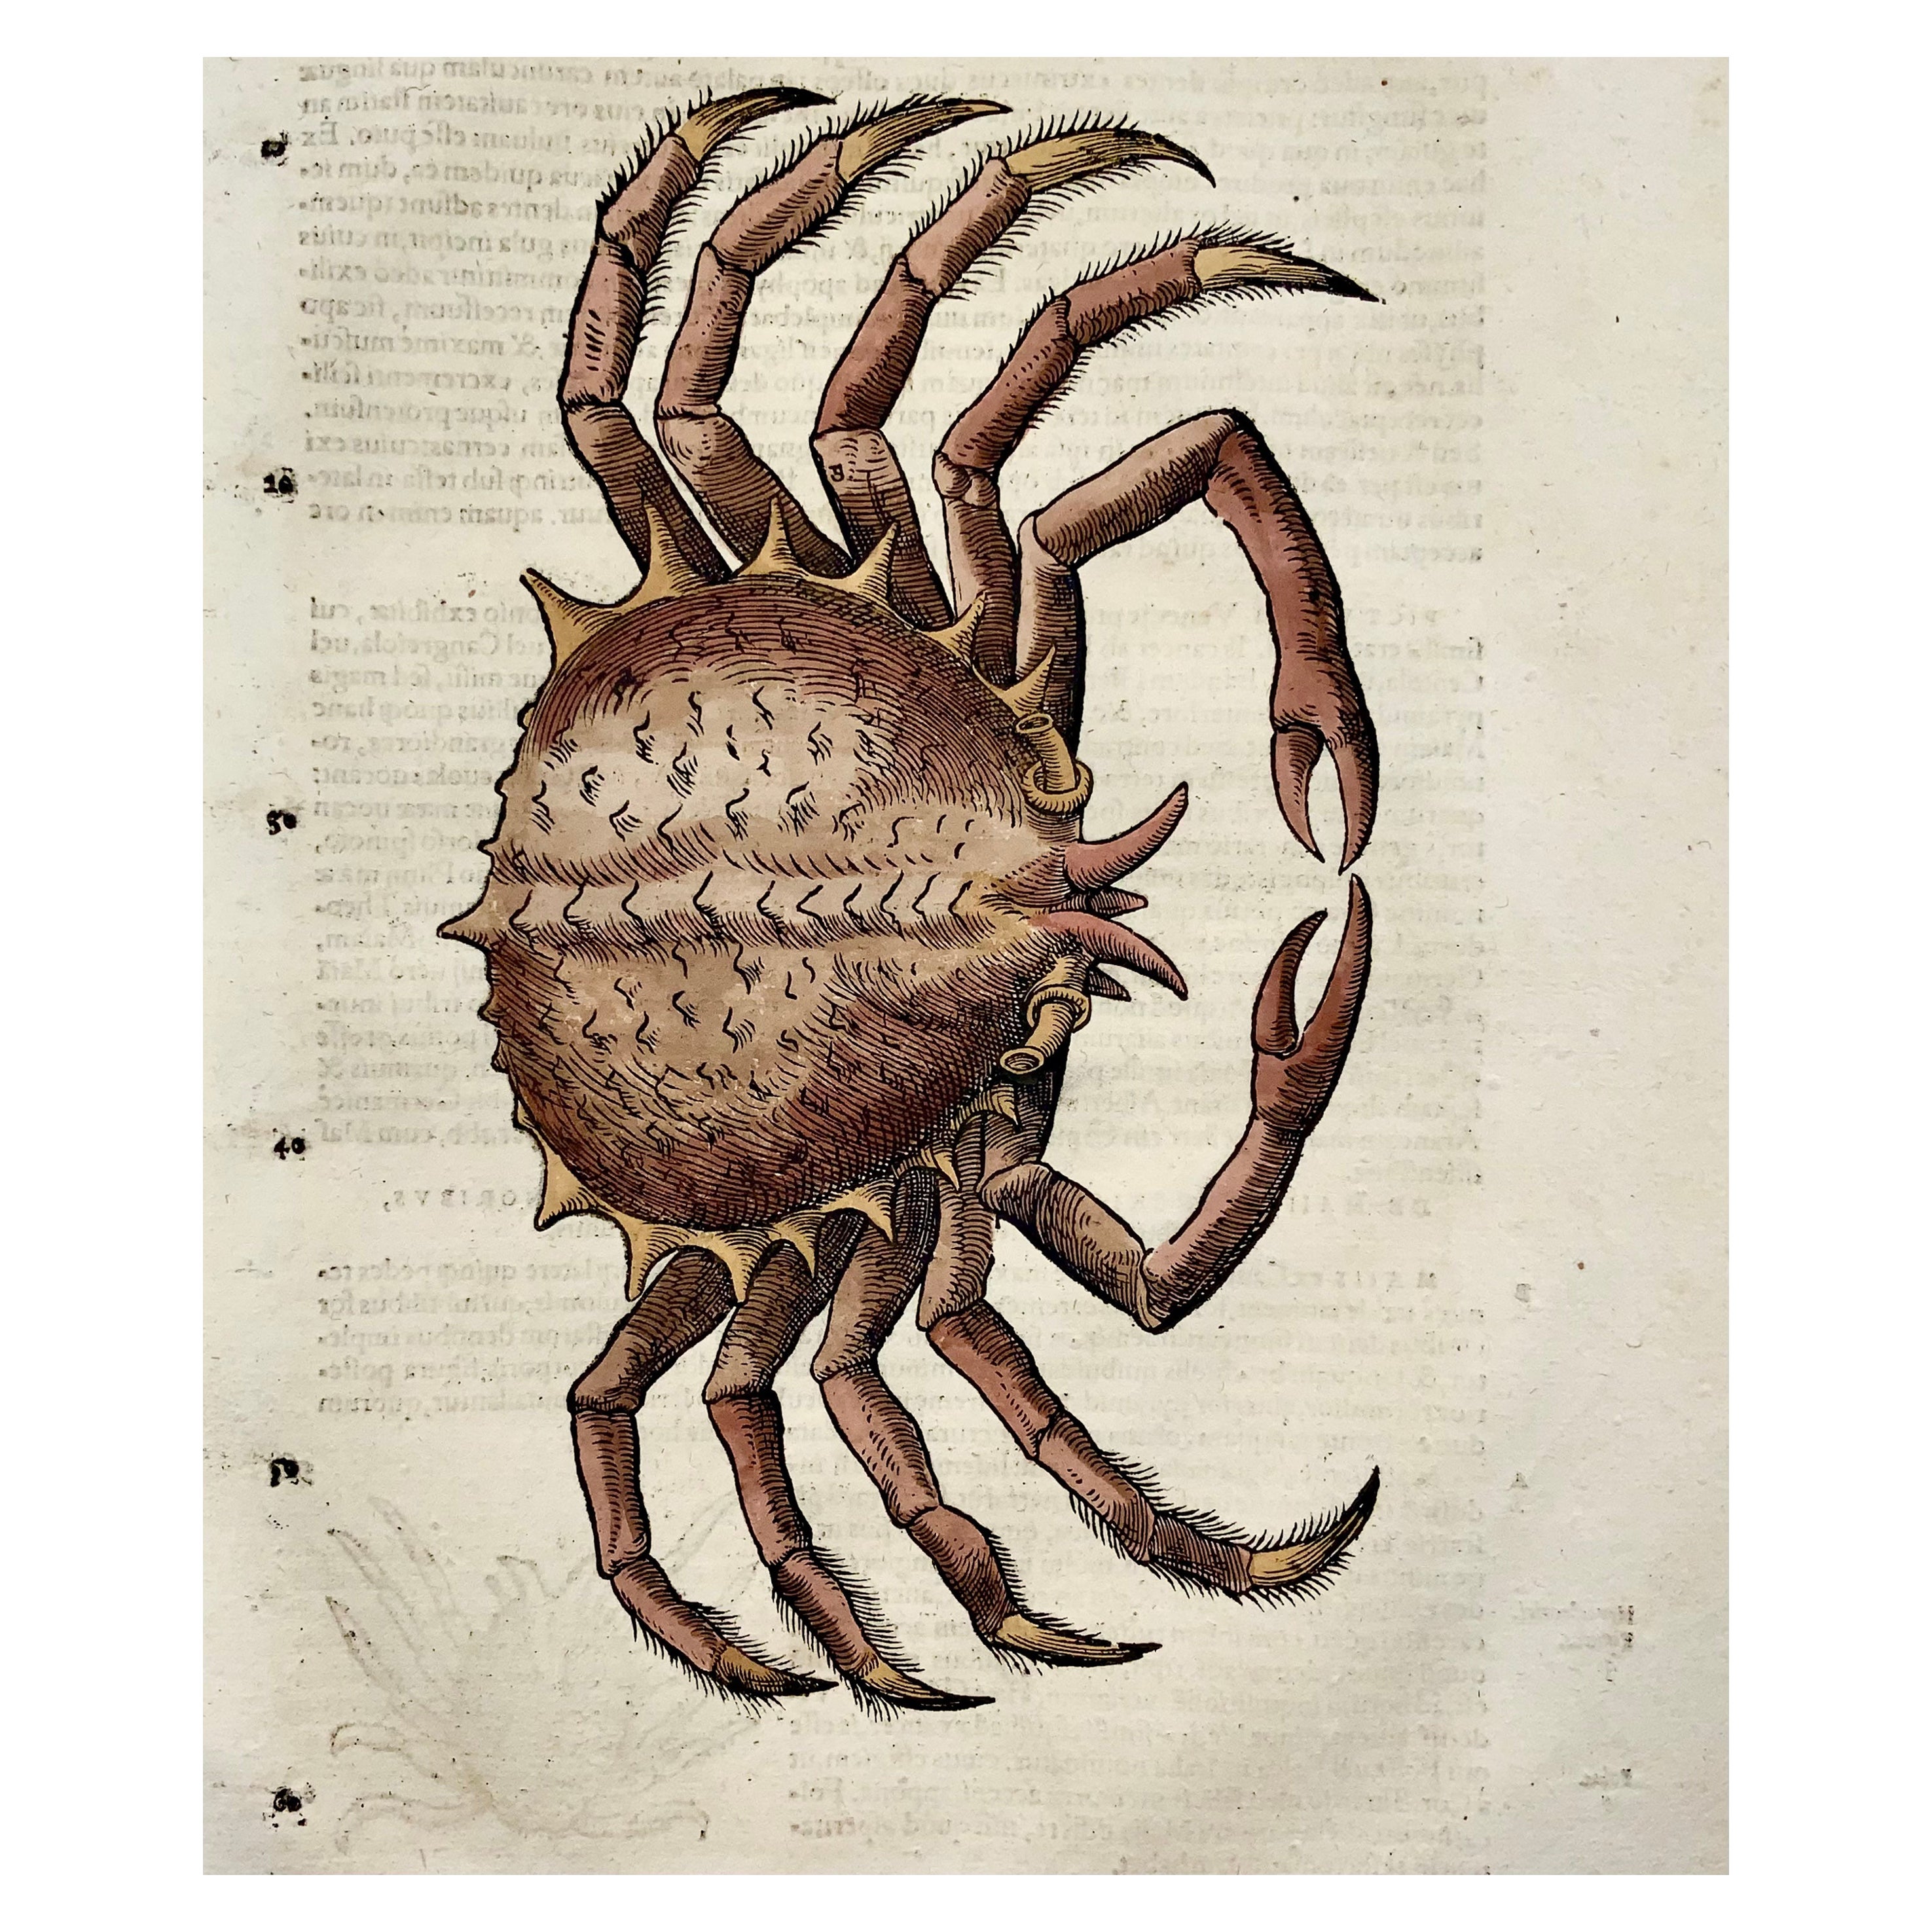 1558 Spinnenkrabäus, Conrad Gesner, Folie, Holzschnitt, handkoloriert, Erstzustand